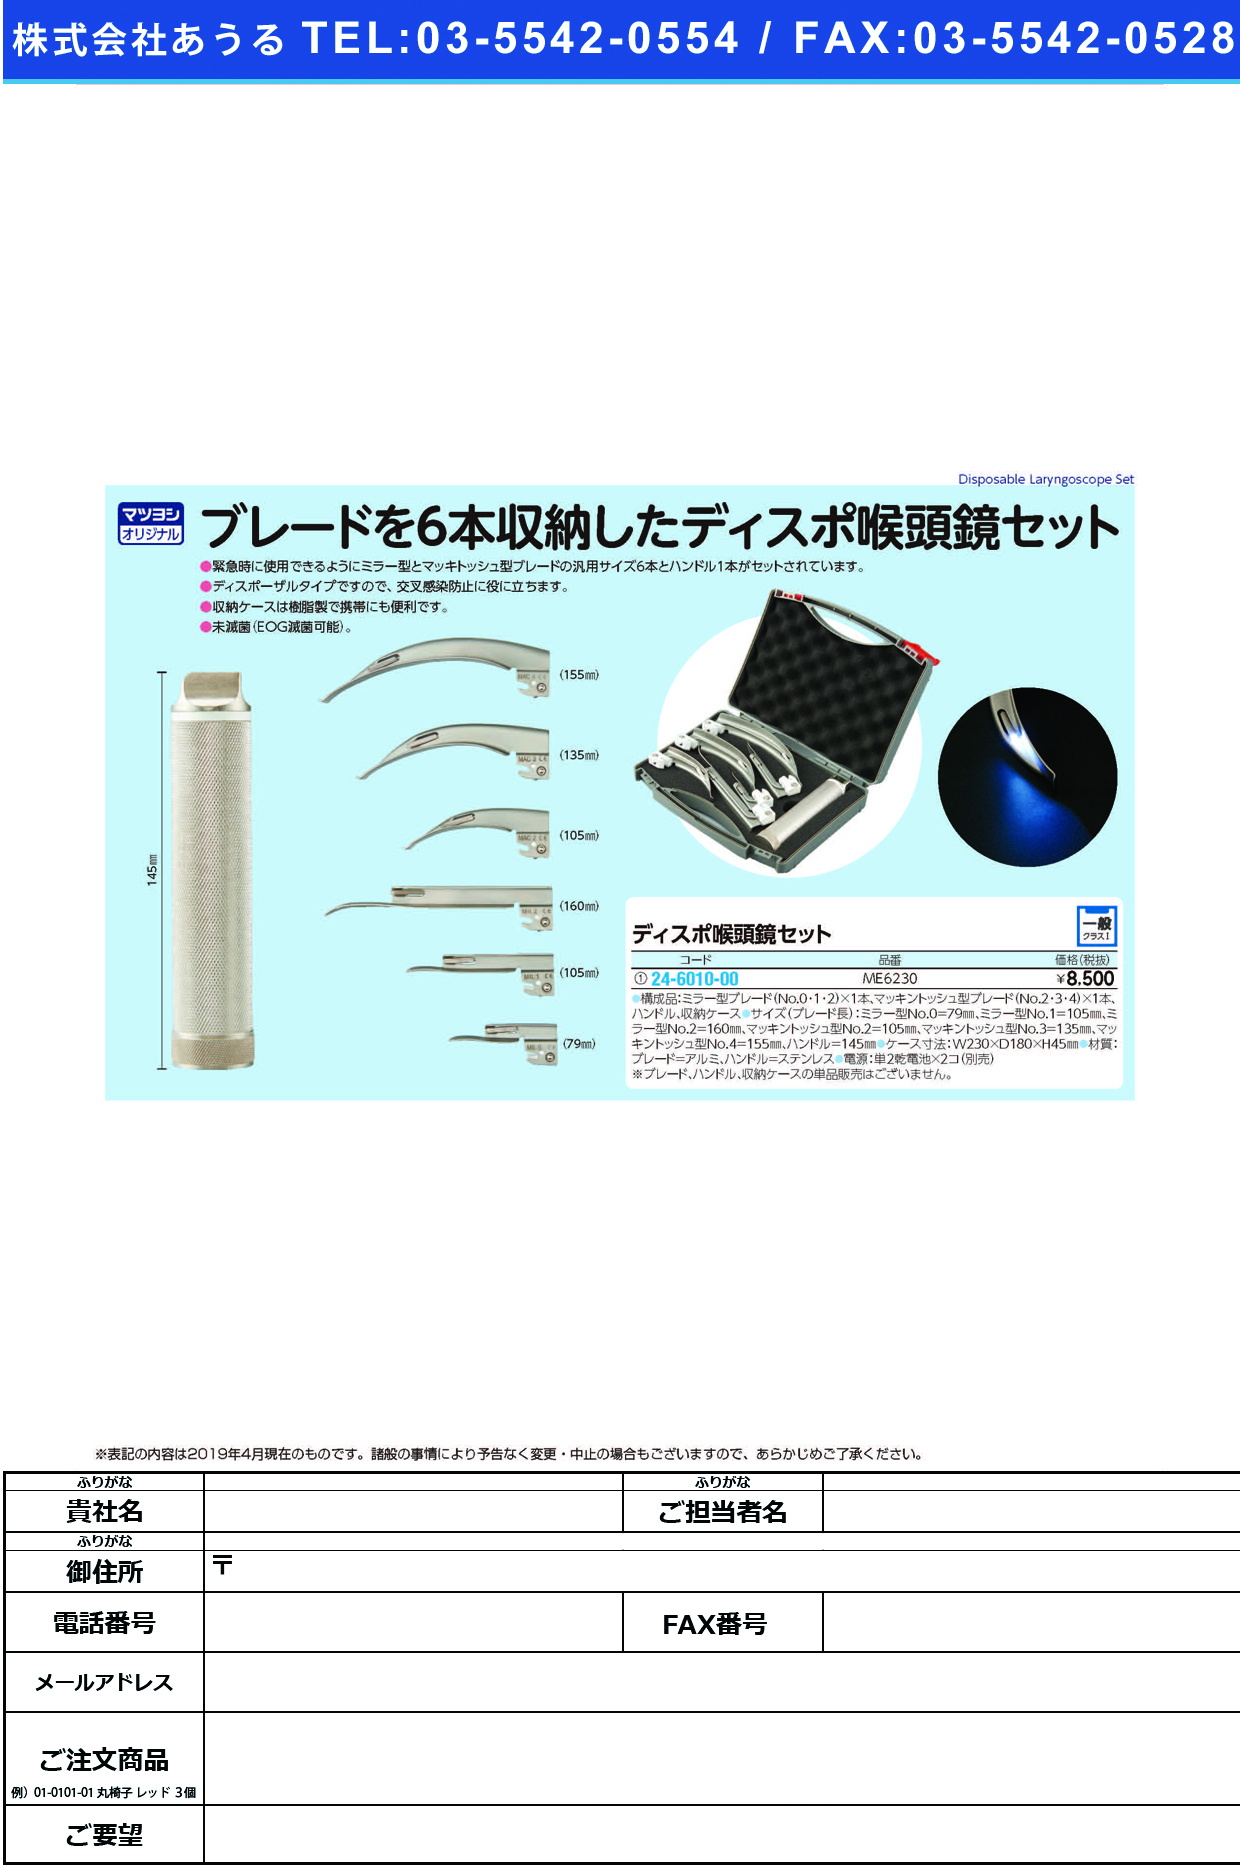 (24-6010-00)ディスポ喉頭鏡セット ME6230 ﾃﾞｨｽﾎﾟｺｳﾄｳｷｮｳｾｯﾄ【1組単位】【2019年カタログ商品】